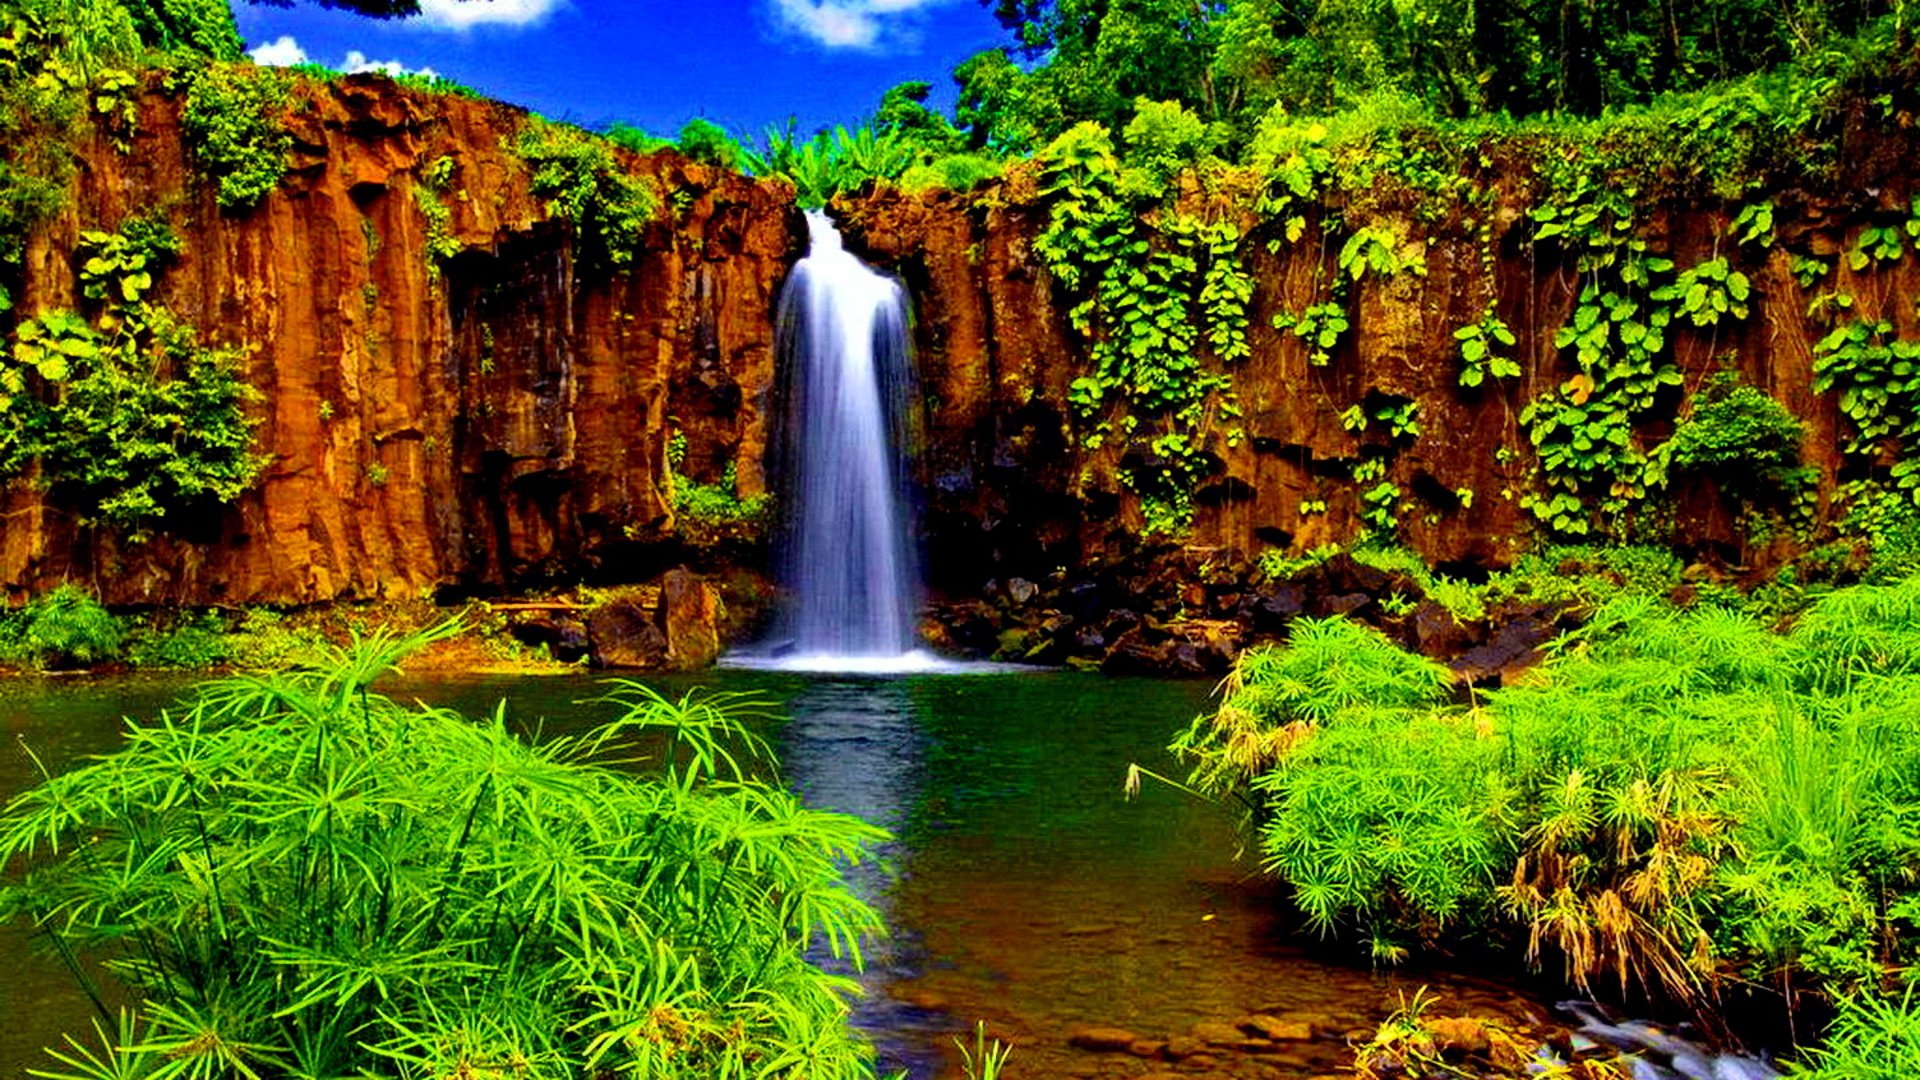 imágenes fondo de pantalla hd,cascada,paisaje natural,recursos hídricos,cuerpo de agua,naturaleza